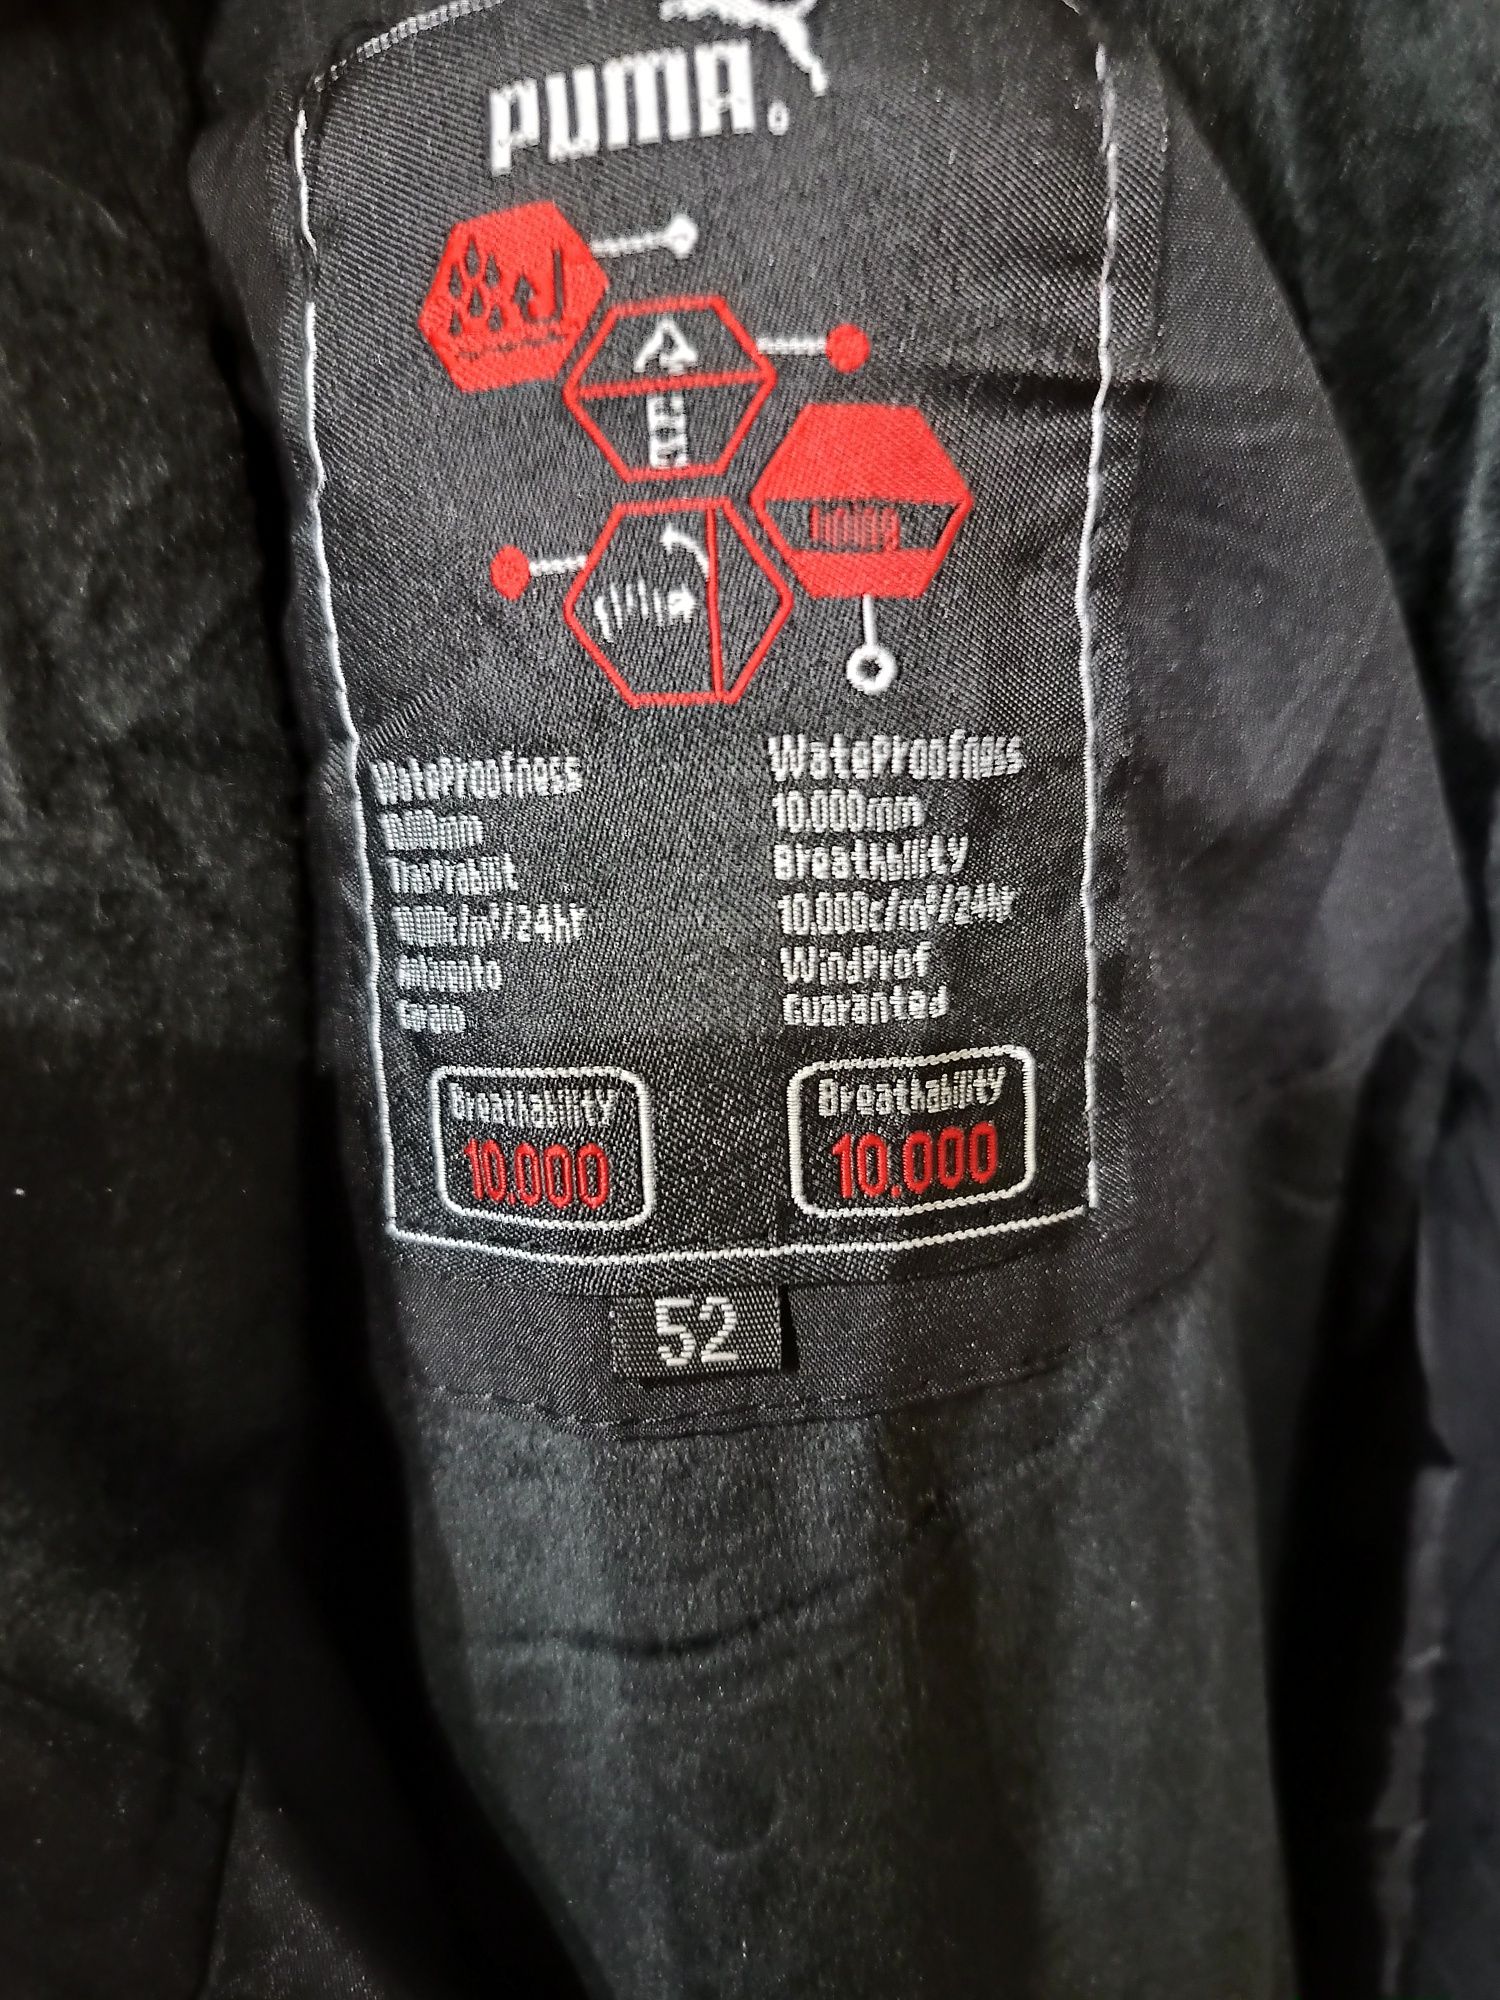 Продам куртку " Риma" размер 52, черного цвета.